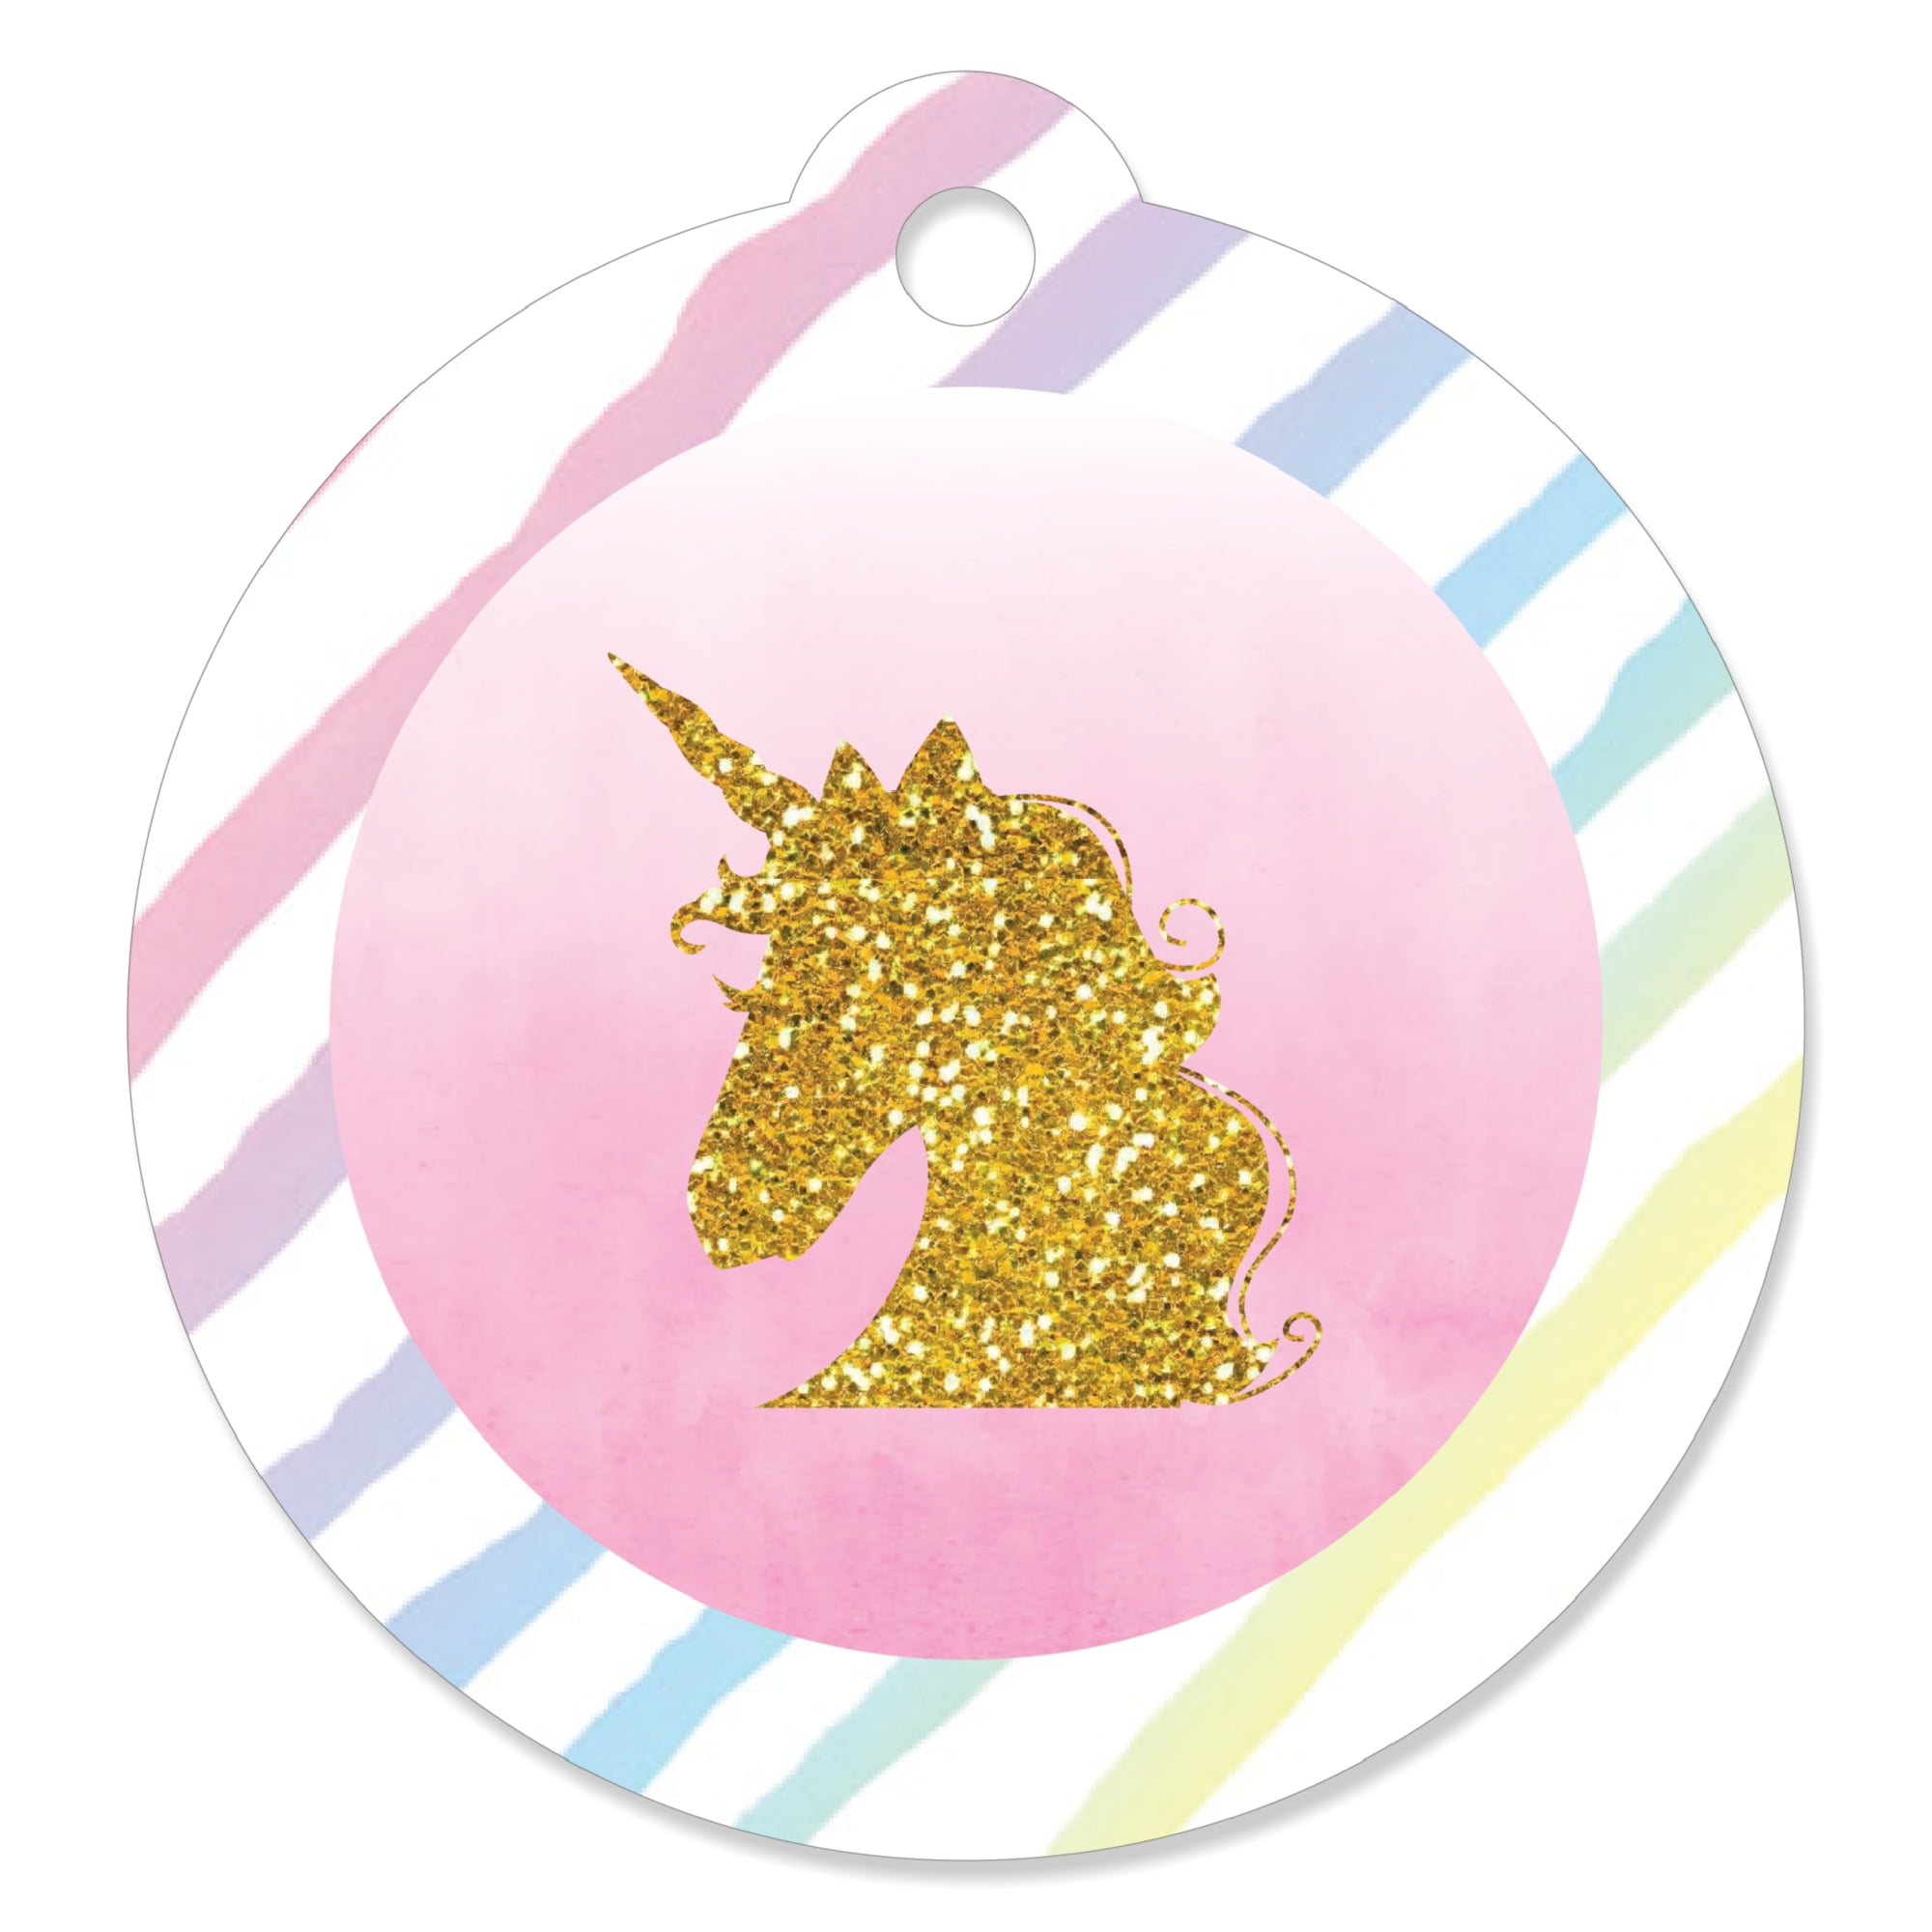 Unicorn Party Favor Tags — Jen T. by Design